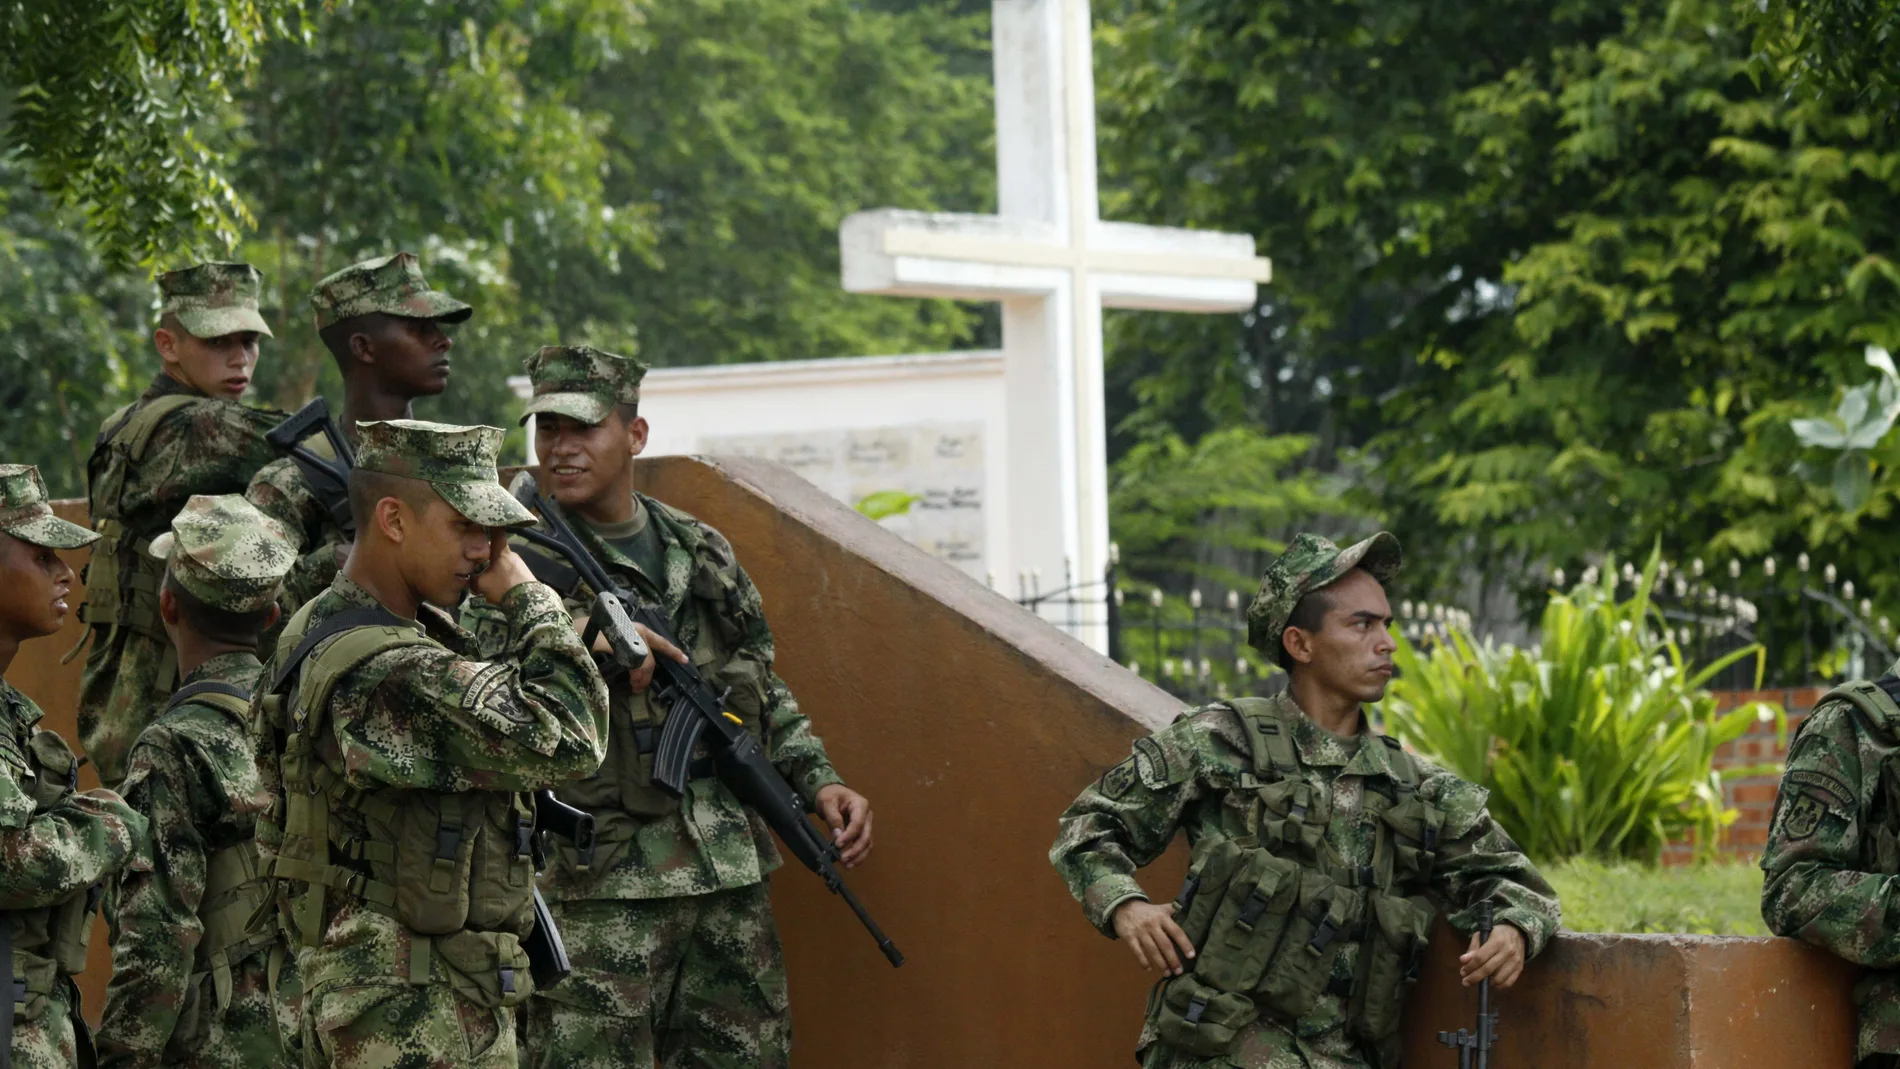 ACOMPAÑA CRÓNICA COLOMBIA CONFLICTO***AME835. EL SALADO (COLOMBIA), 23/01/2021.- Fotografía fechada el 8 de julio de 2011 en la que se muestra a unos soldados del ejército de Colombia que descansan junto a un cementerio donde reposan los restos de varias de las víctimas masacradas por paramilitares en febrero de 2000, en El Salado (Colombia). El pasado 17 de enero al menos 11 personas recibieron nuevas amenazas de muerte que recordaron la masacre en la que un grupo de 450 paramilitares del bloque héroes de los Montes de María de las Autodefensas Unidas de Colombia (AUC) realizaron un recorrido de muerte por varios poblados que terminó en El Salado con un saldo de más de un centenar de campesinos asesinados. La sevicia incluyó torturas, degollamientos, decapitaciones, empalamientos y violaciones a hombres, mujeres y niños. EFE/ Ricardo Maldonado Rozo